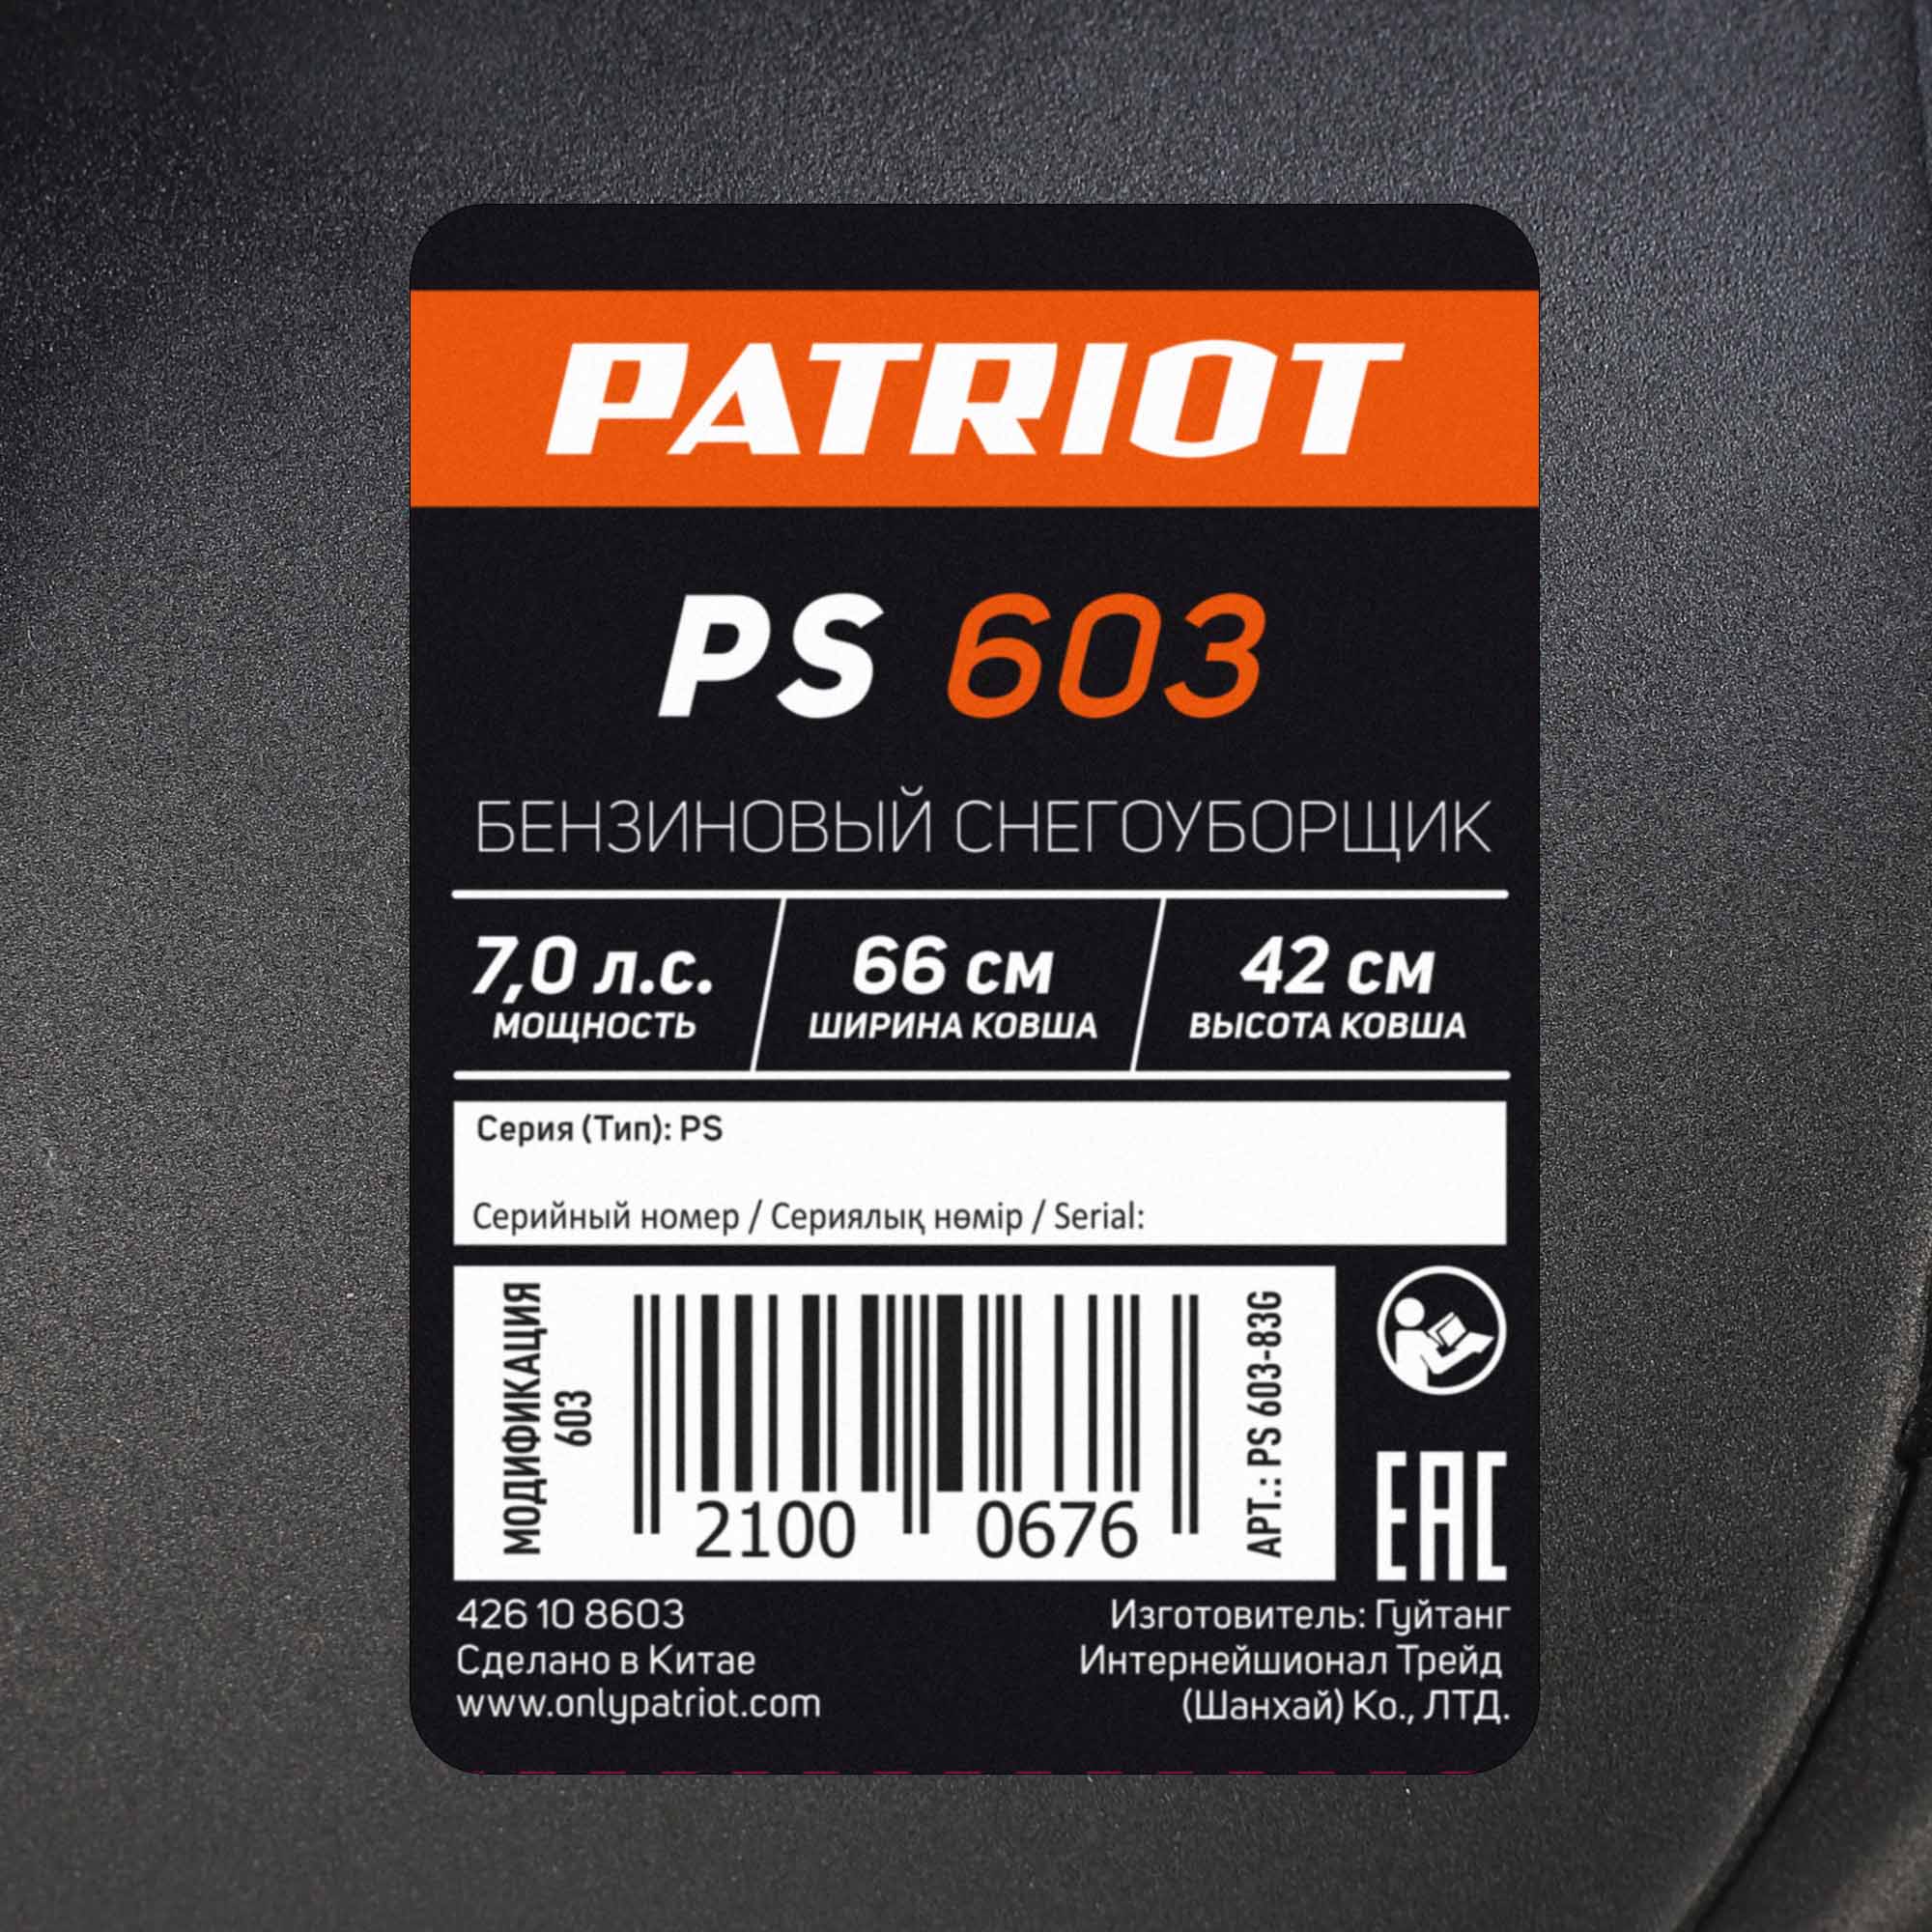  бензиновый PATRIOT PS 603 на официальном сайте